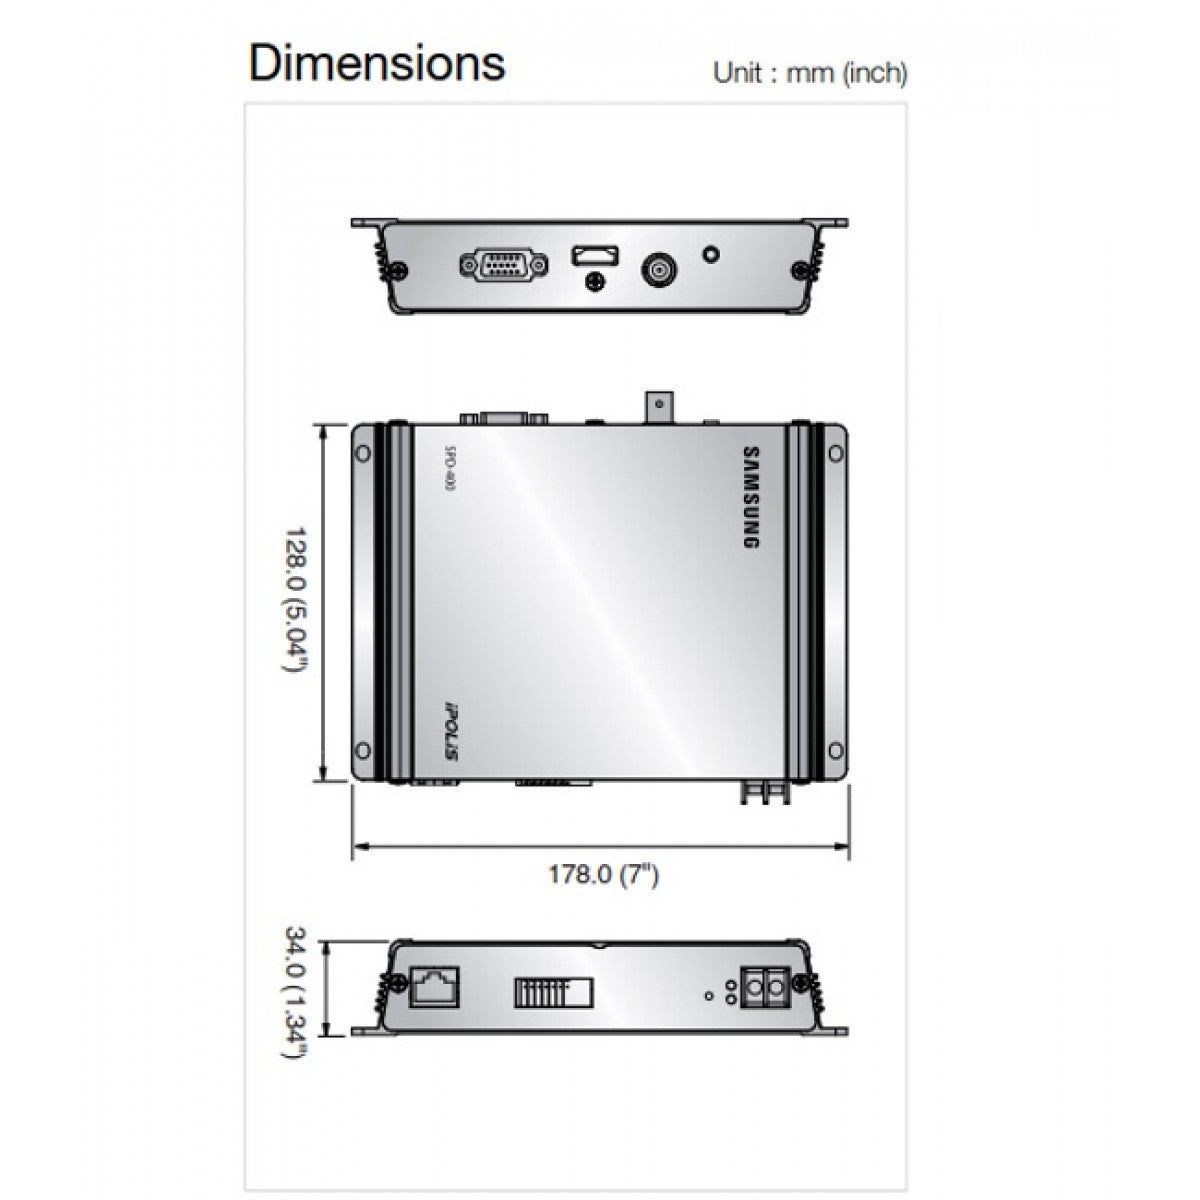 Samsung/Hanwha SPD-400 Dimensions